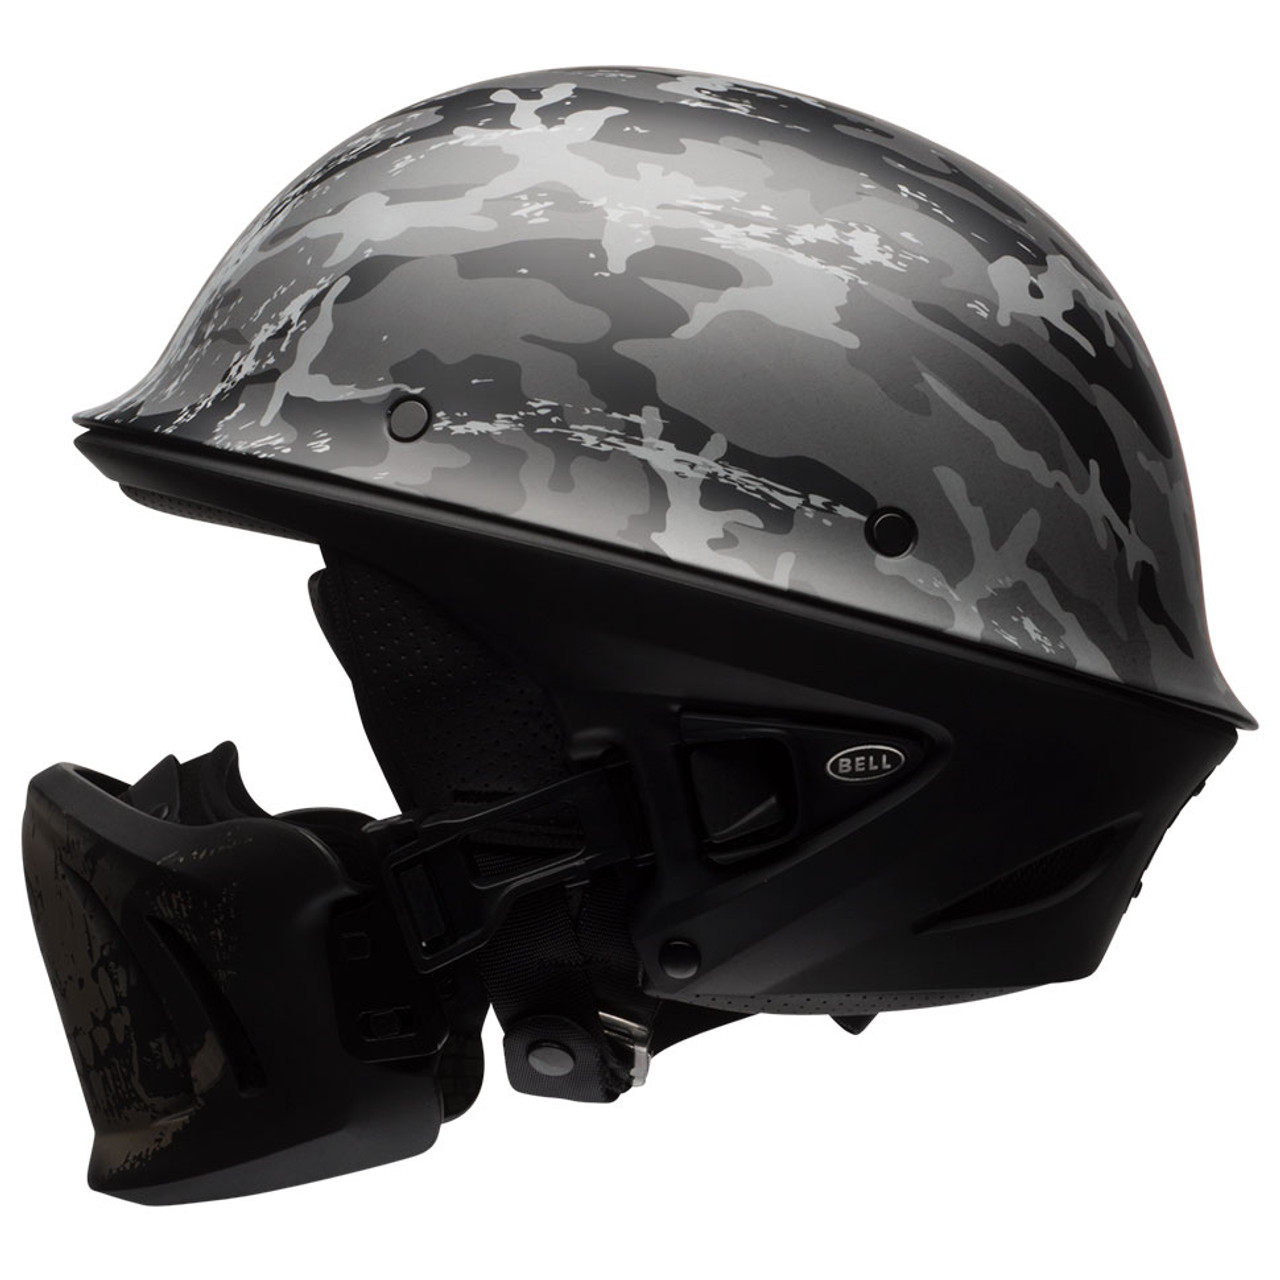 Download Bell Rogue Ghost Recon Camo Motorcycle Helmet - Get ...